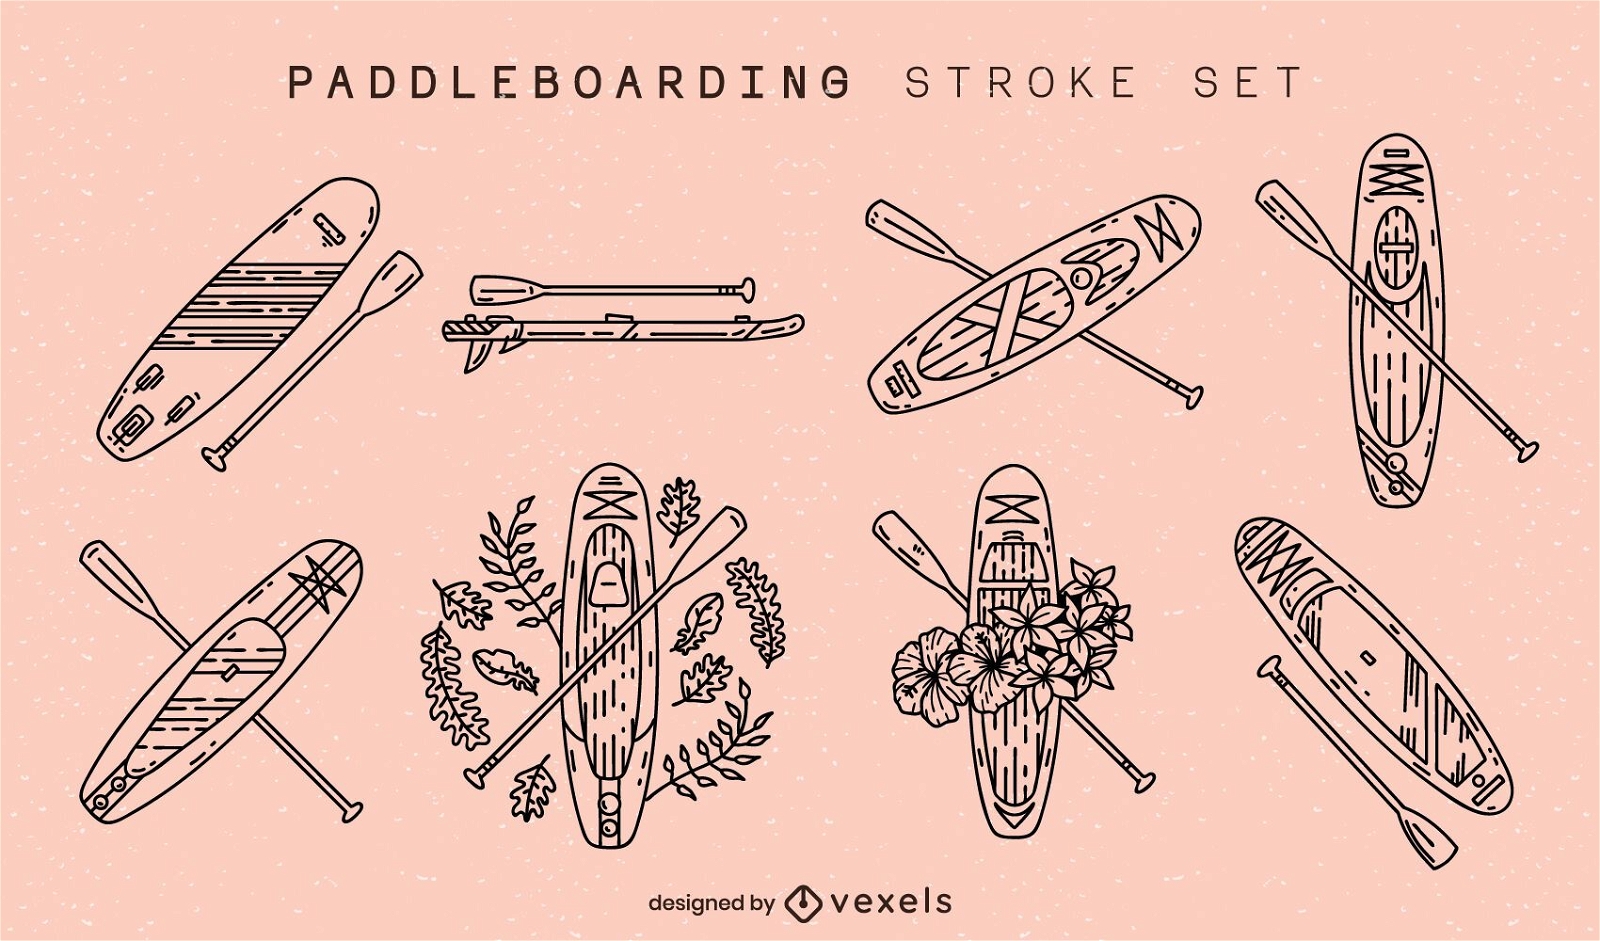 Paddleboarding boards stroke set